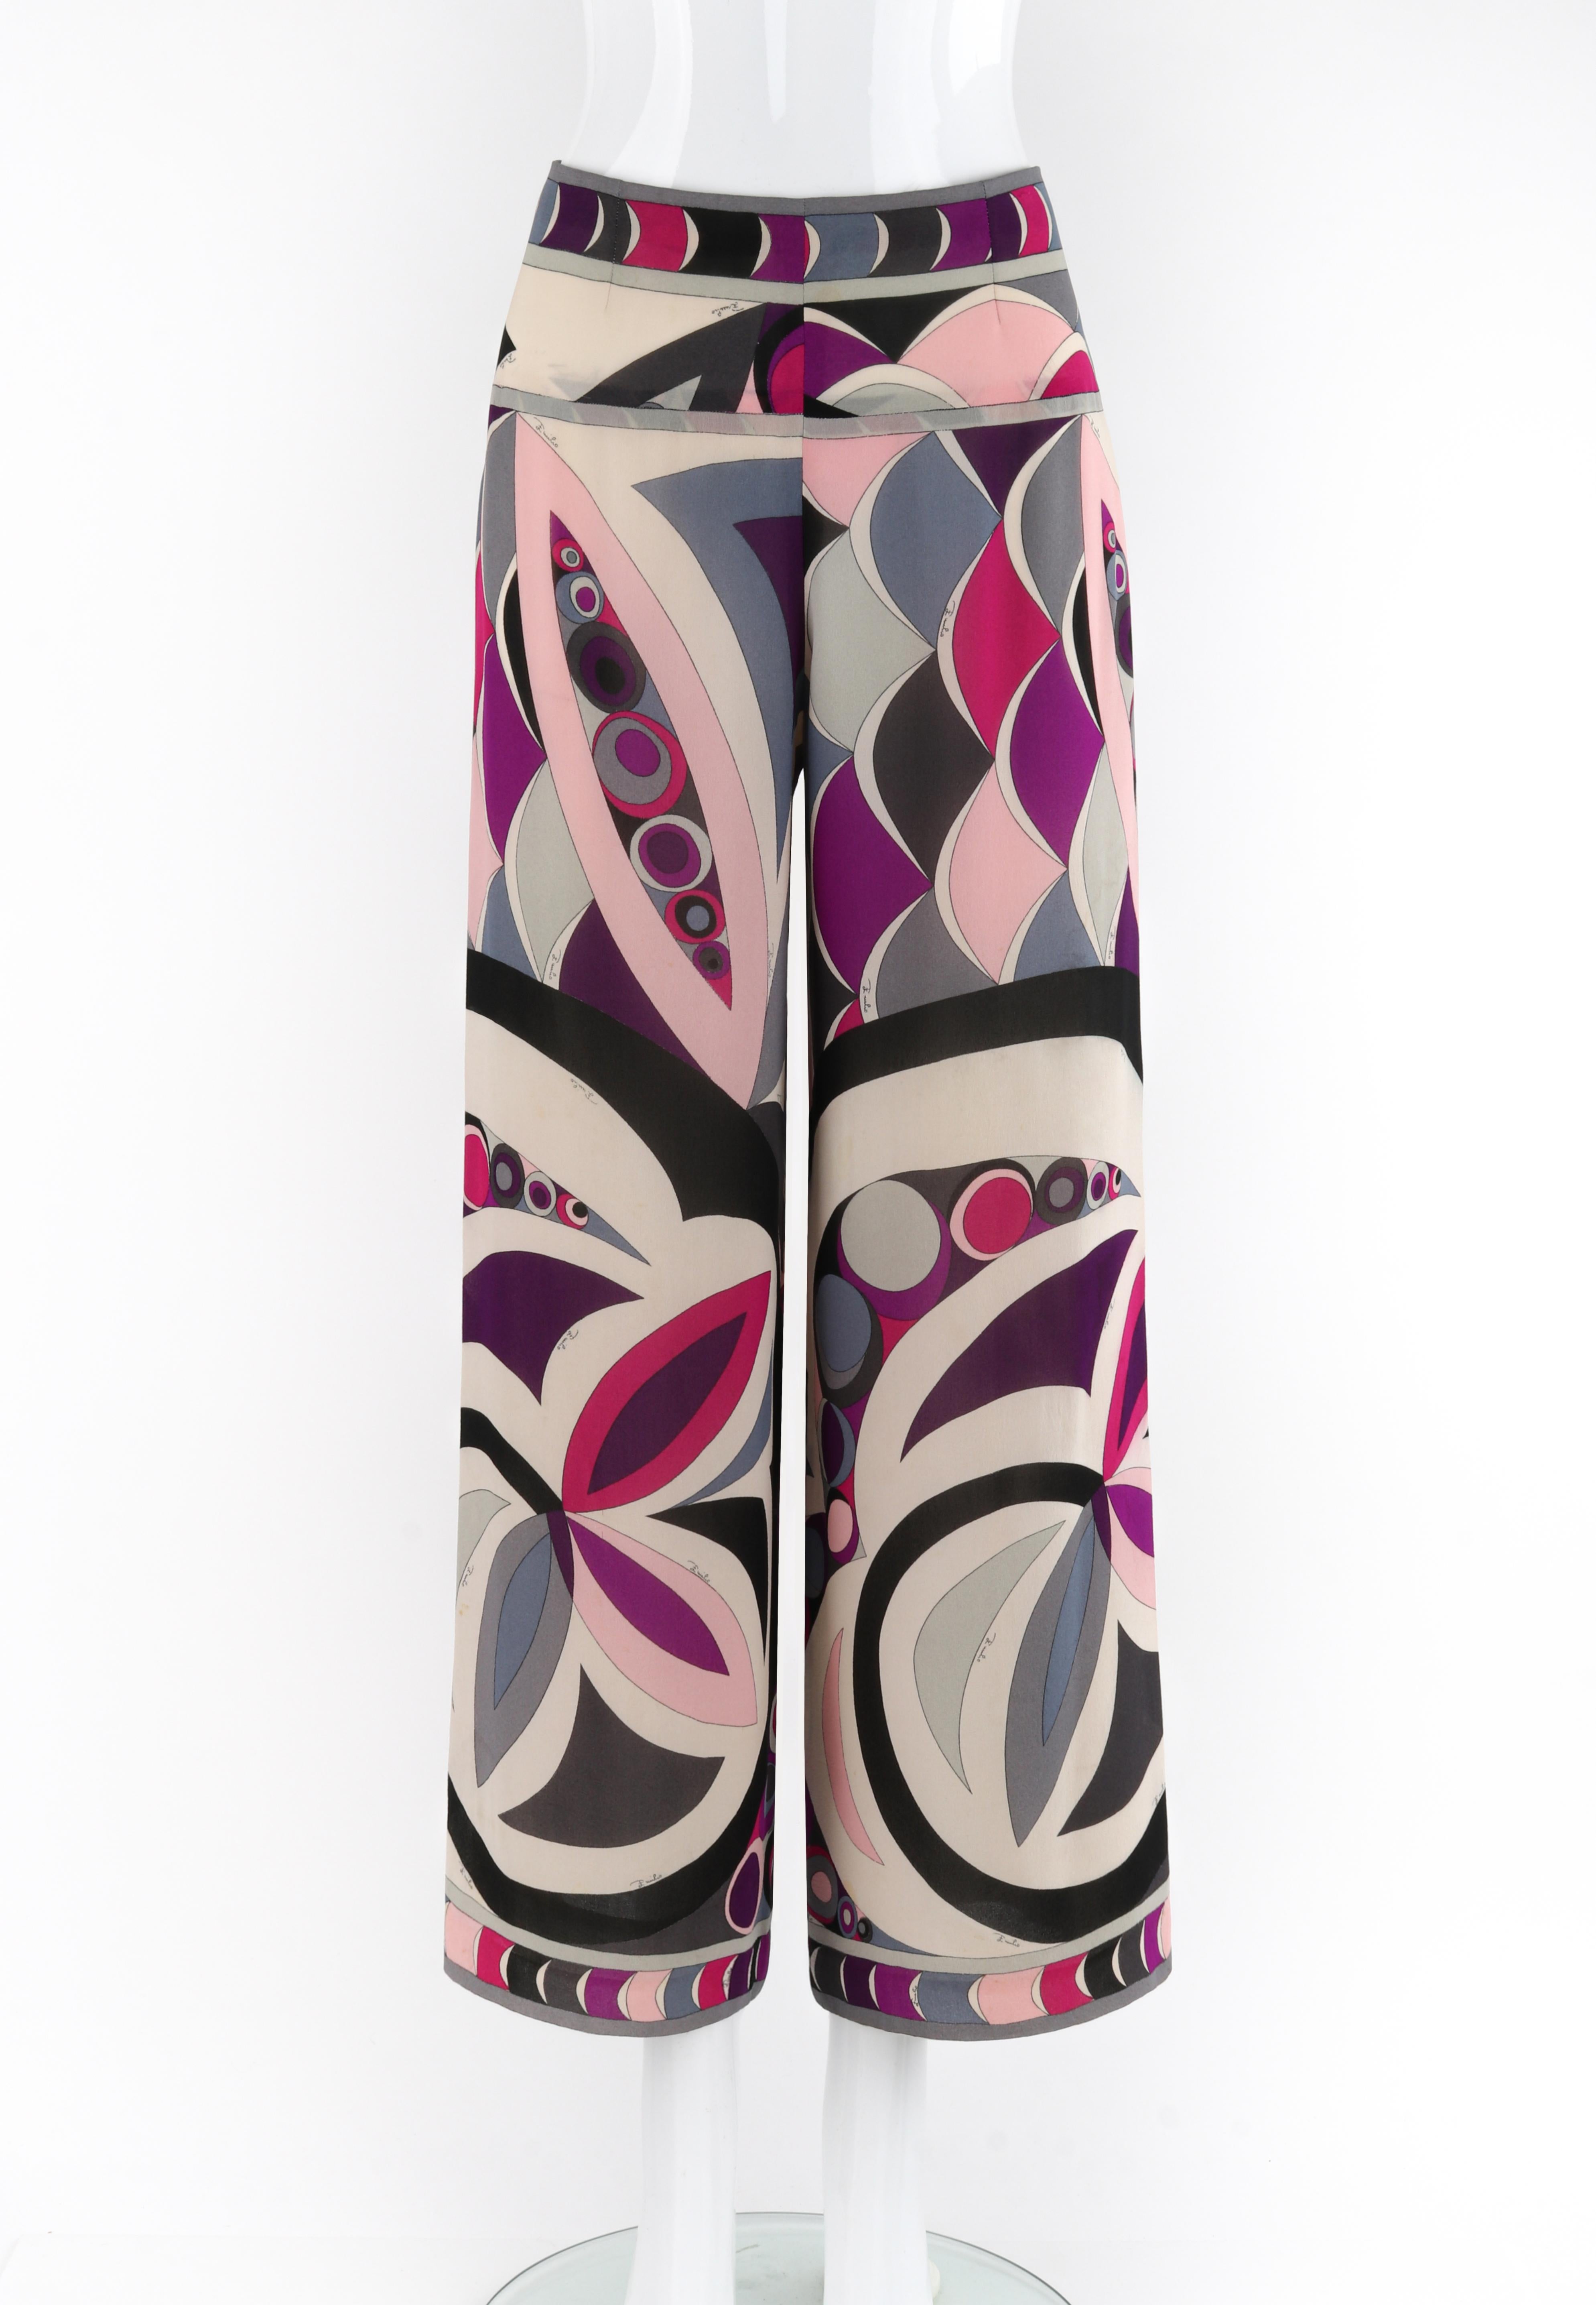 Marque / Fabricant : Emilio Pucci
Circa : 1960s
Designer : Emilio Pucci 
Style : Pantalon pantalon
Couleur(s) : nuances de gris, violet, rose, noir, blanc.
Doublé : Non
Contenu du tissu marqué : 